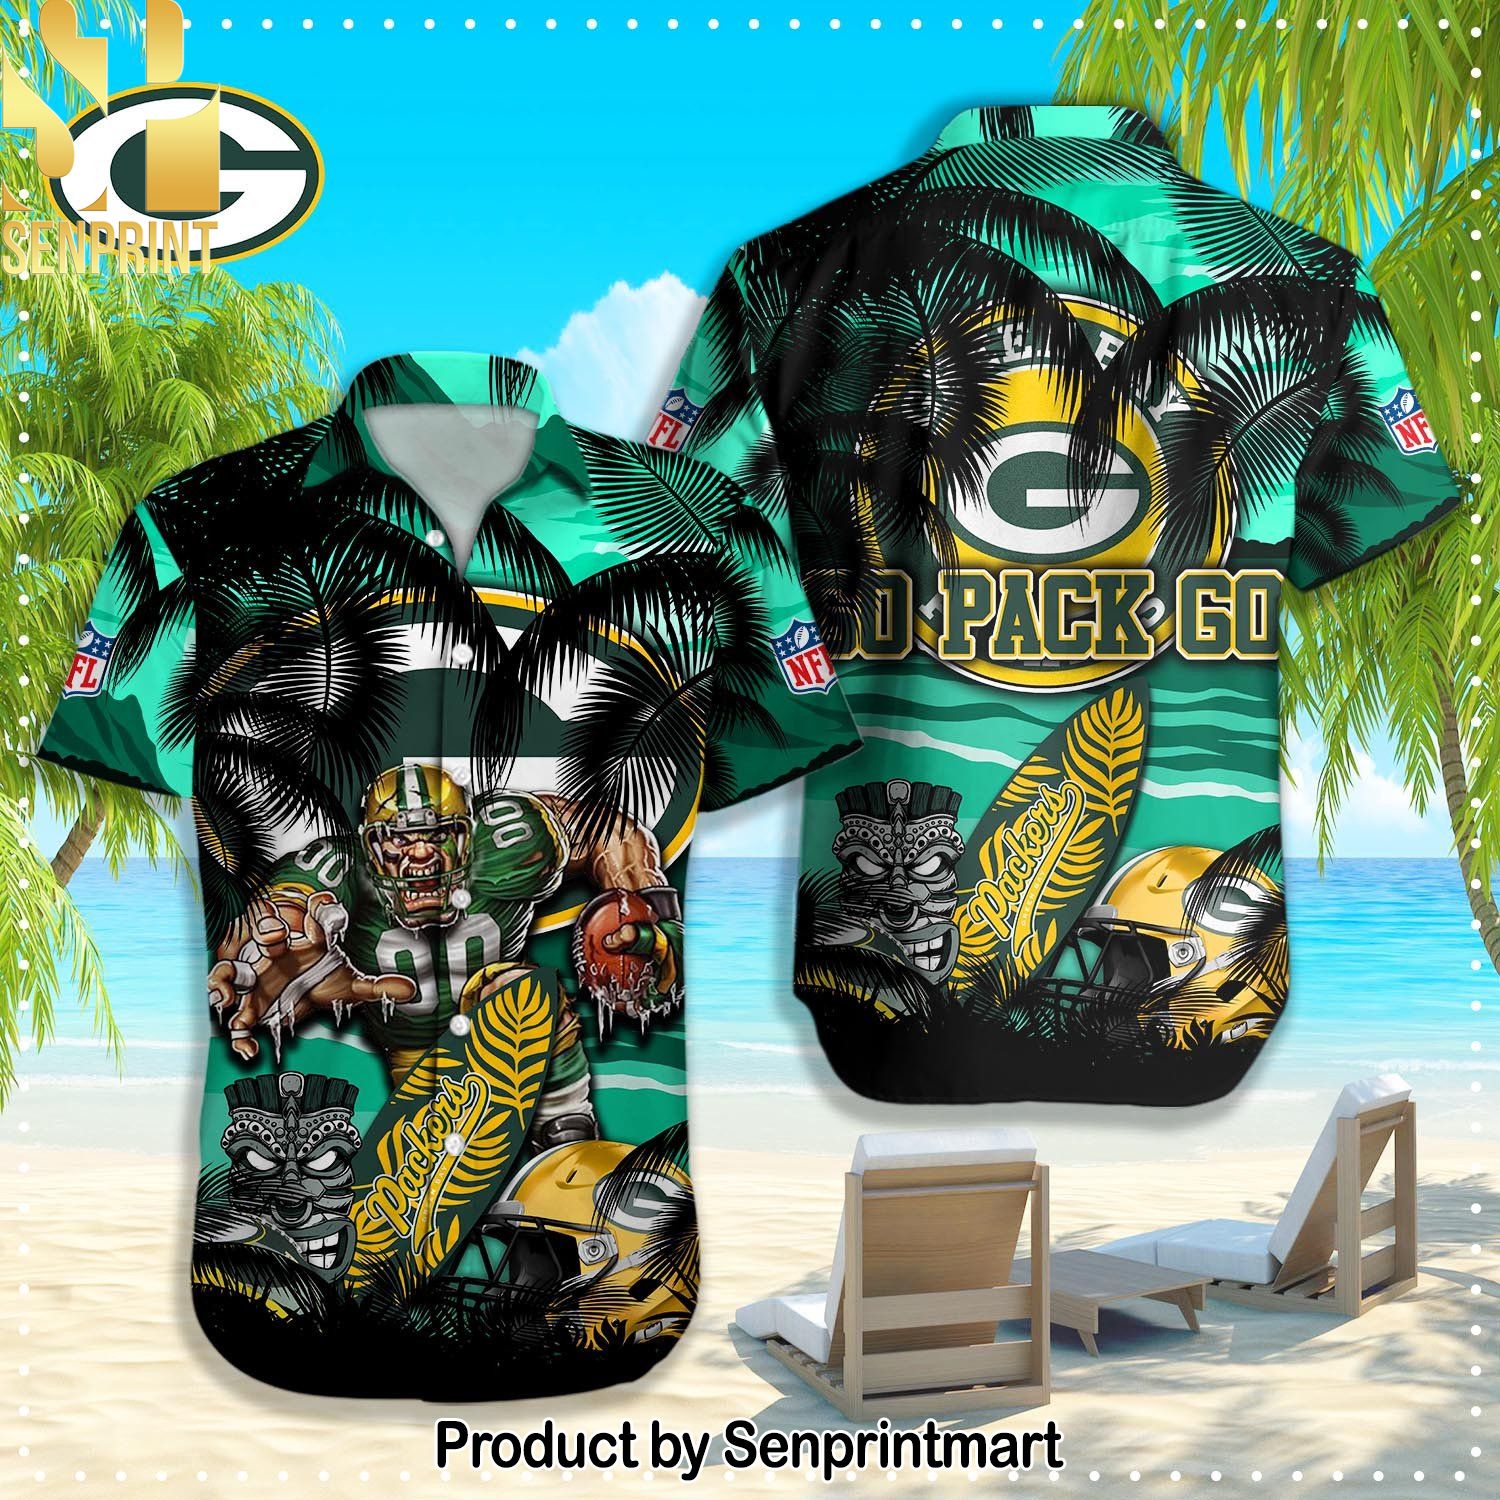 Green Bay Packers NFL New Version Hawaiian Shirt and Shorts